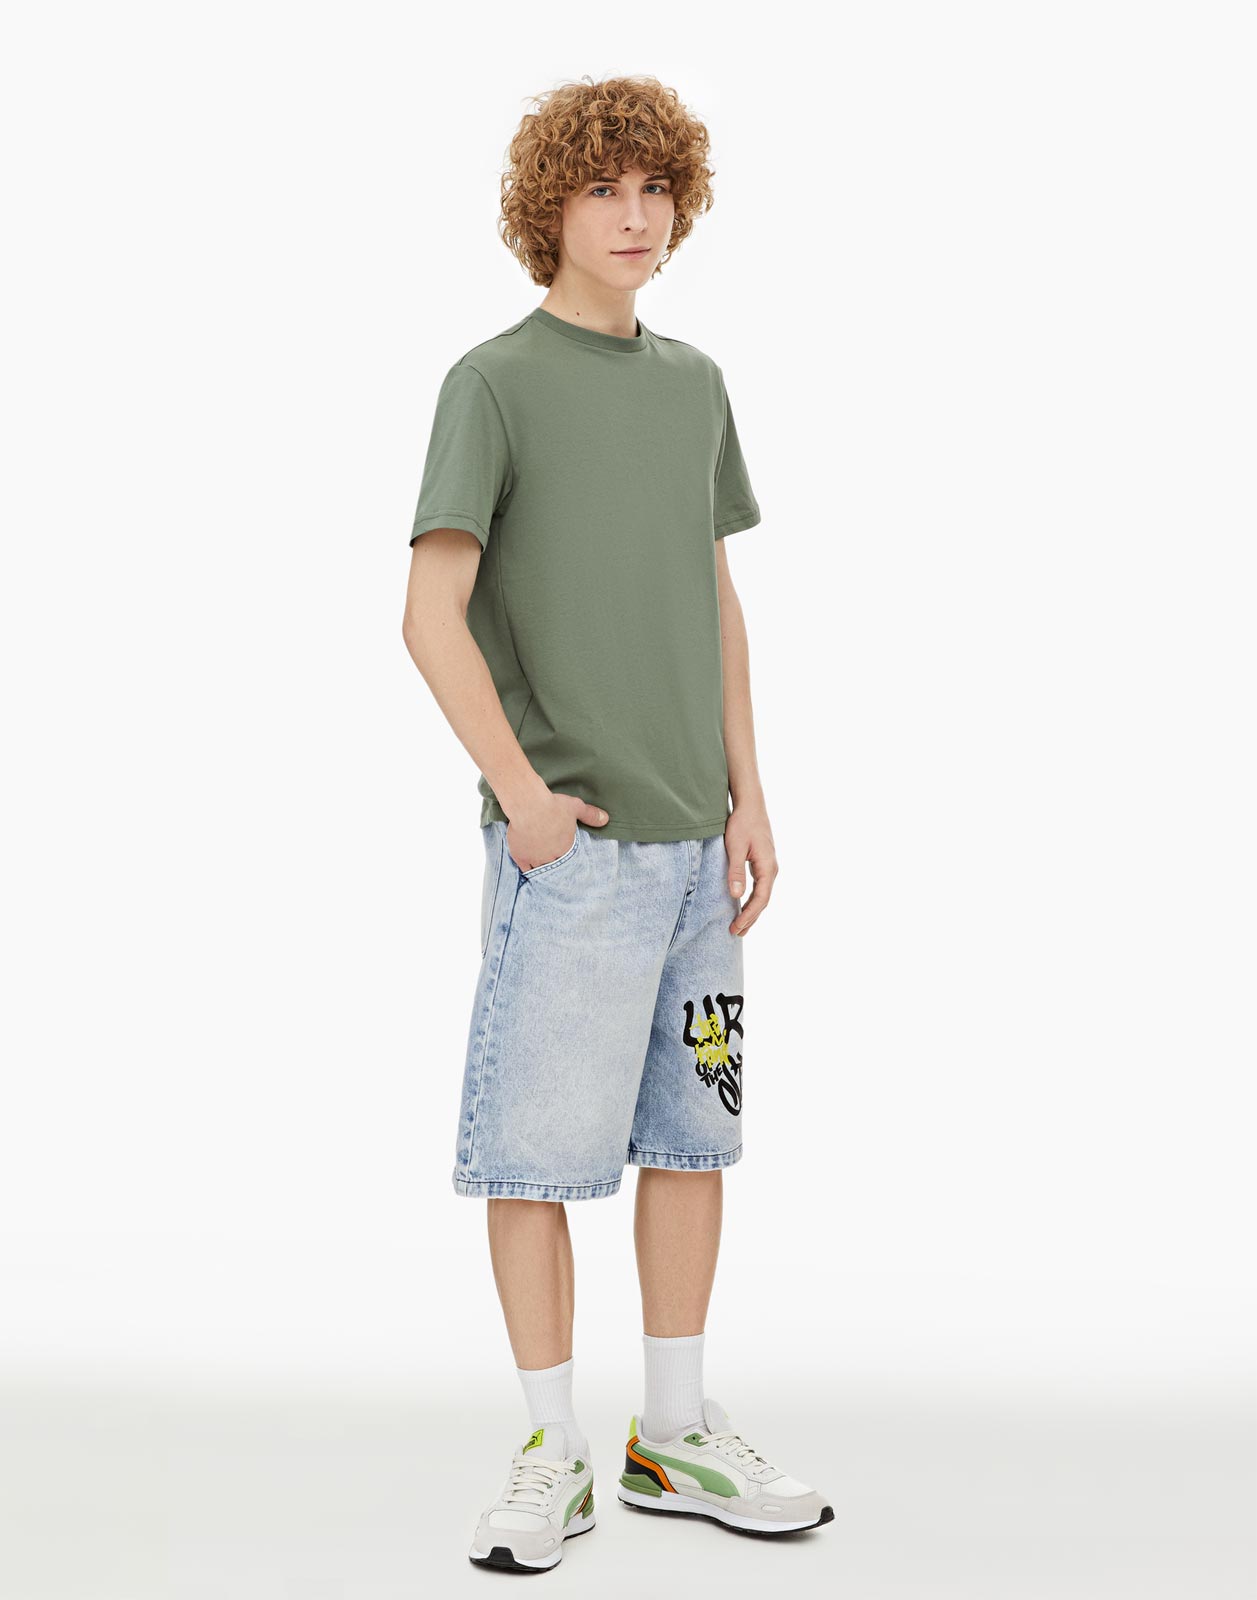 Хаки базовая футболка Standard из джерси для мальчика 8-10л/134-140